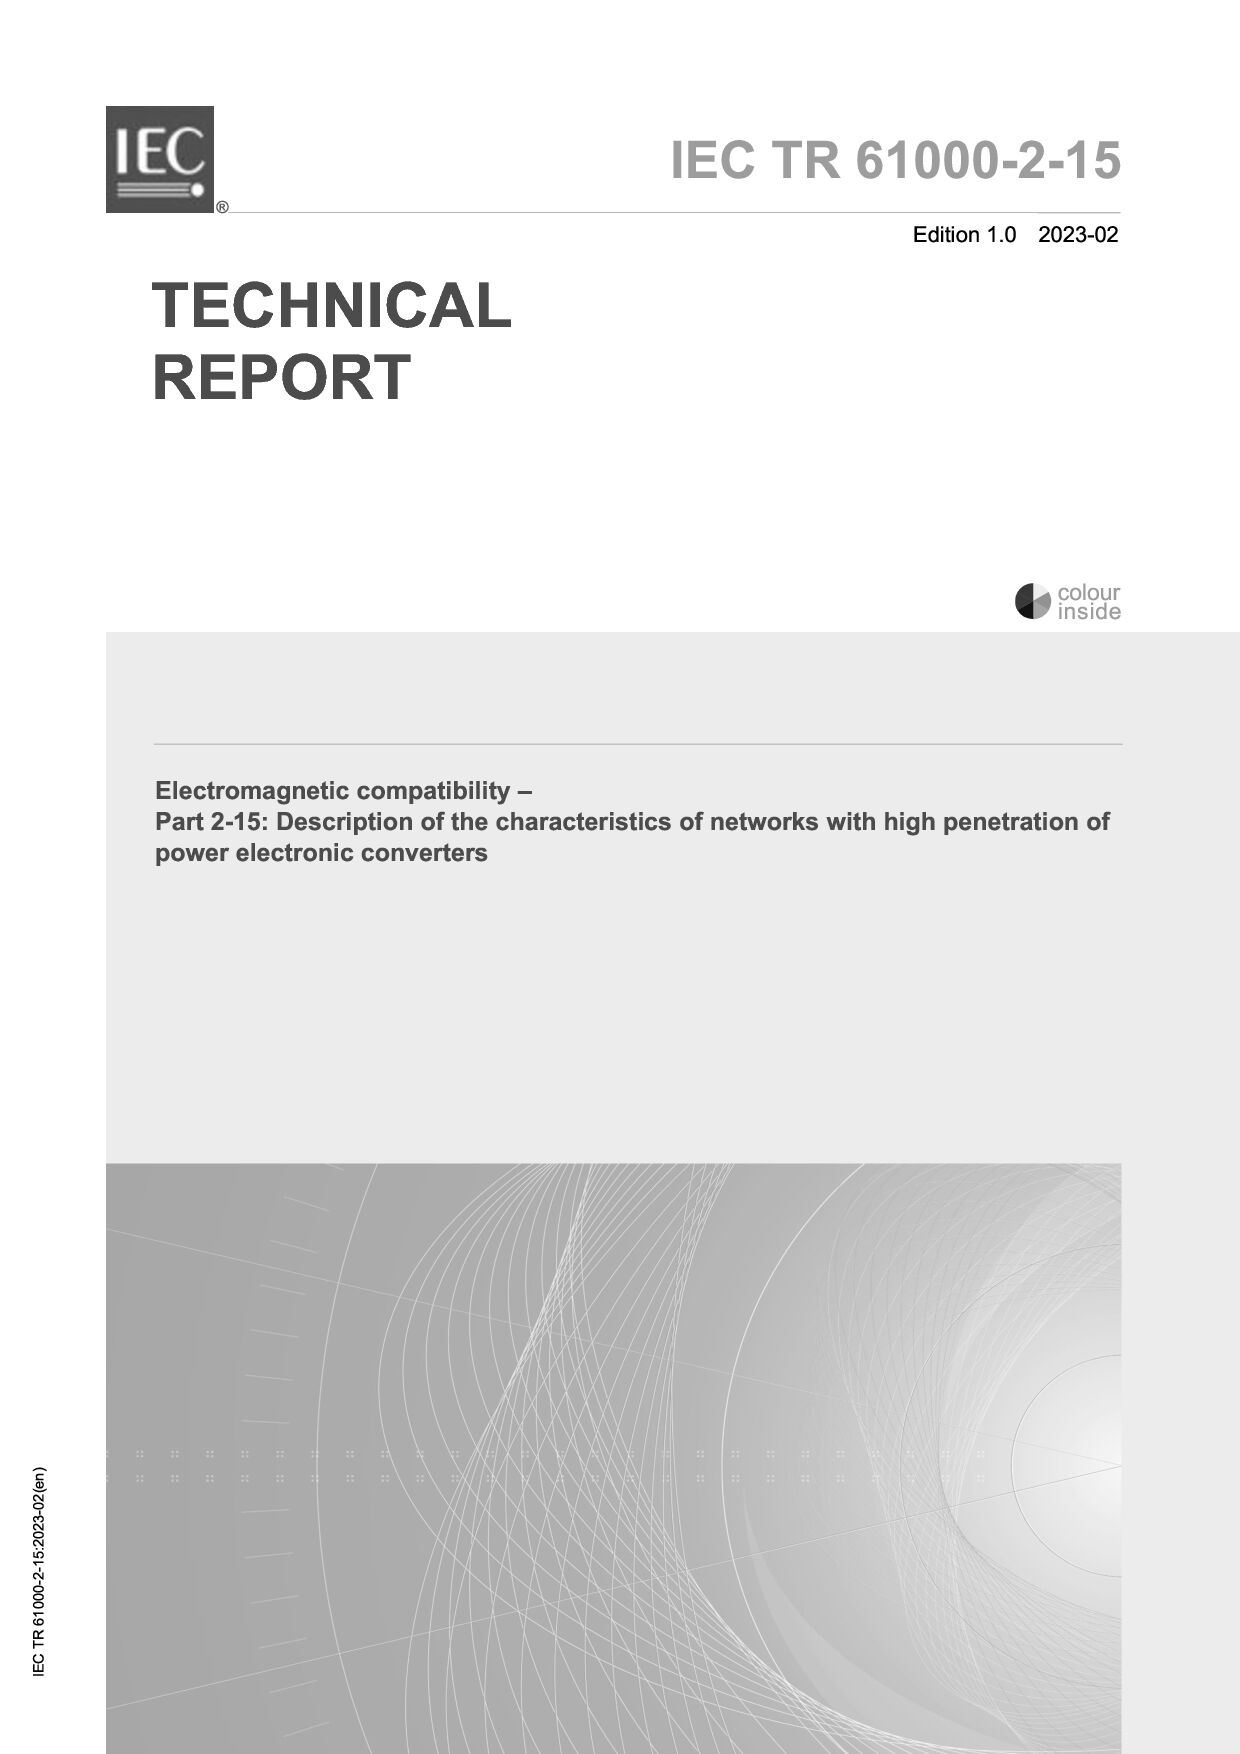 IEC TR 61000-2-15:2023